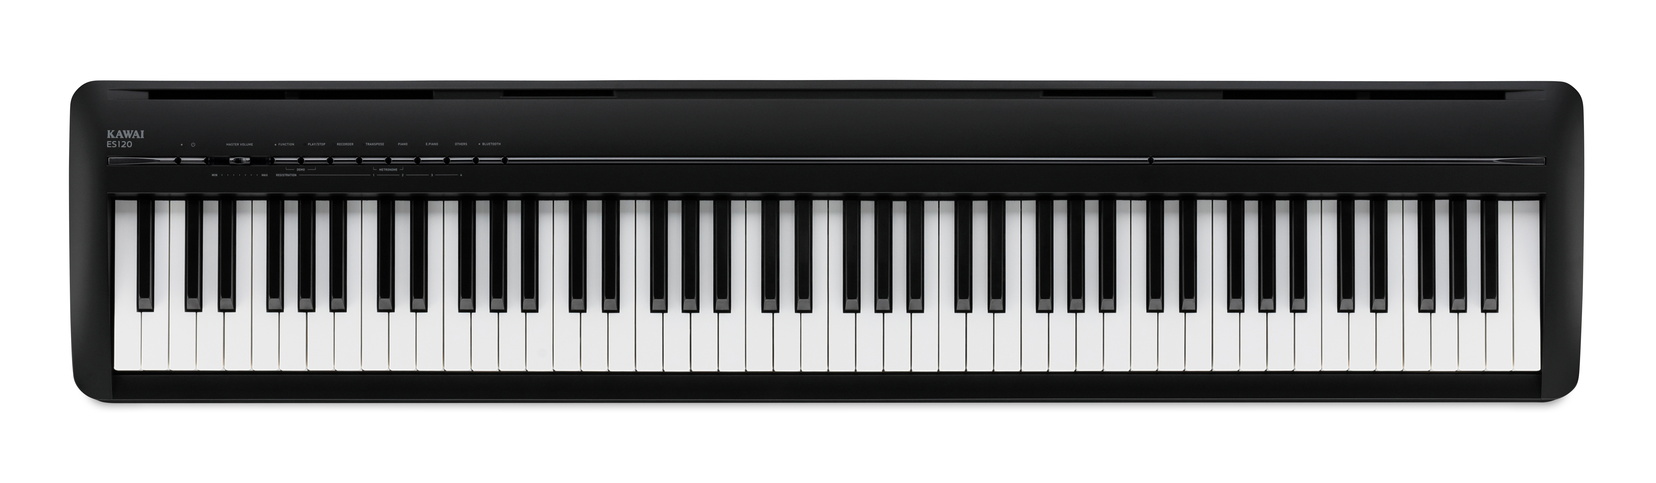 KAWAI ES 120 Digitale Piano